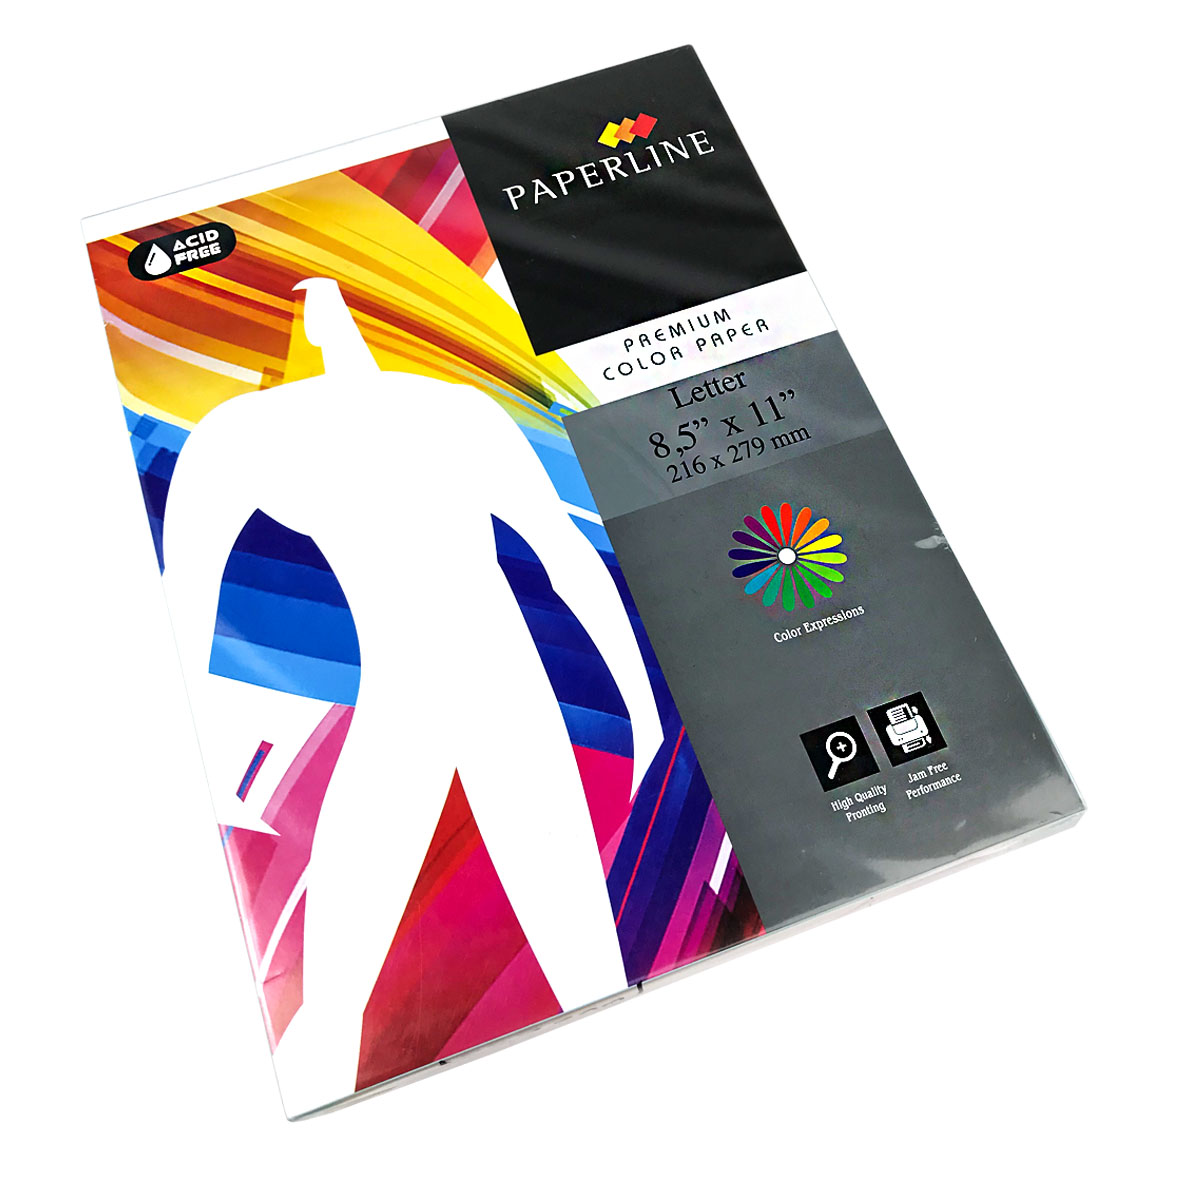 Paquete de 500 Hojas Papel bond de colores Suaves (Pasteles) Tamaño Carta PAPER LINE